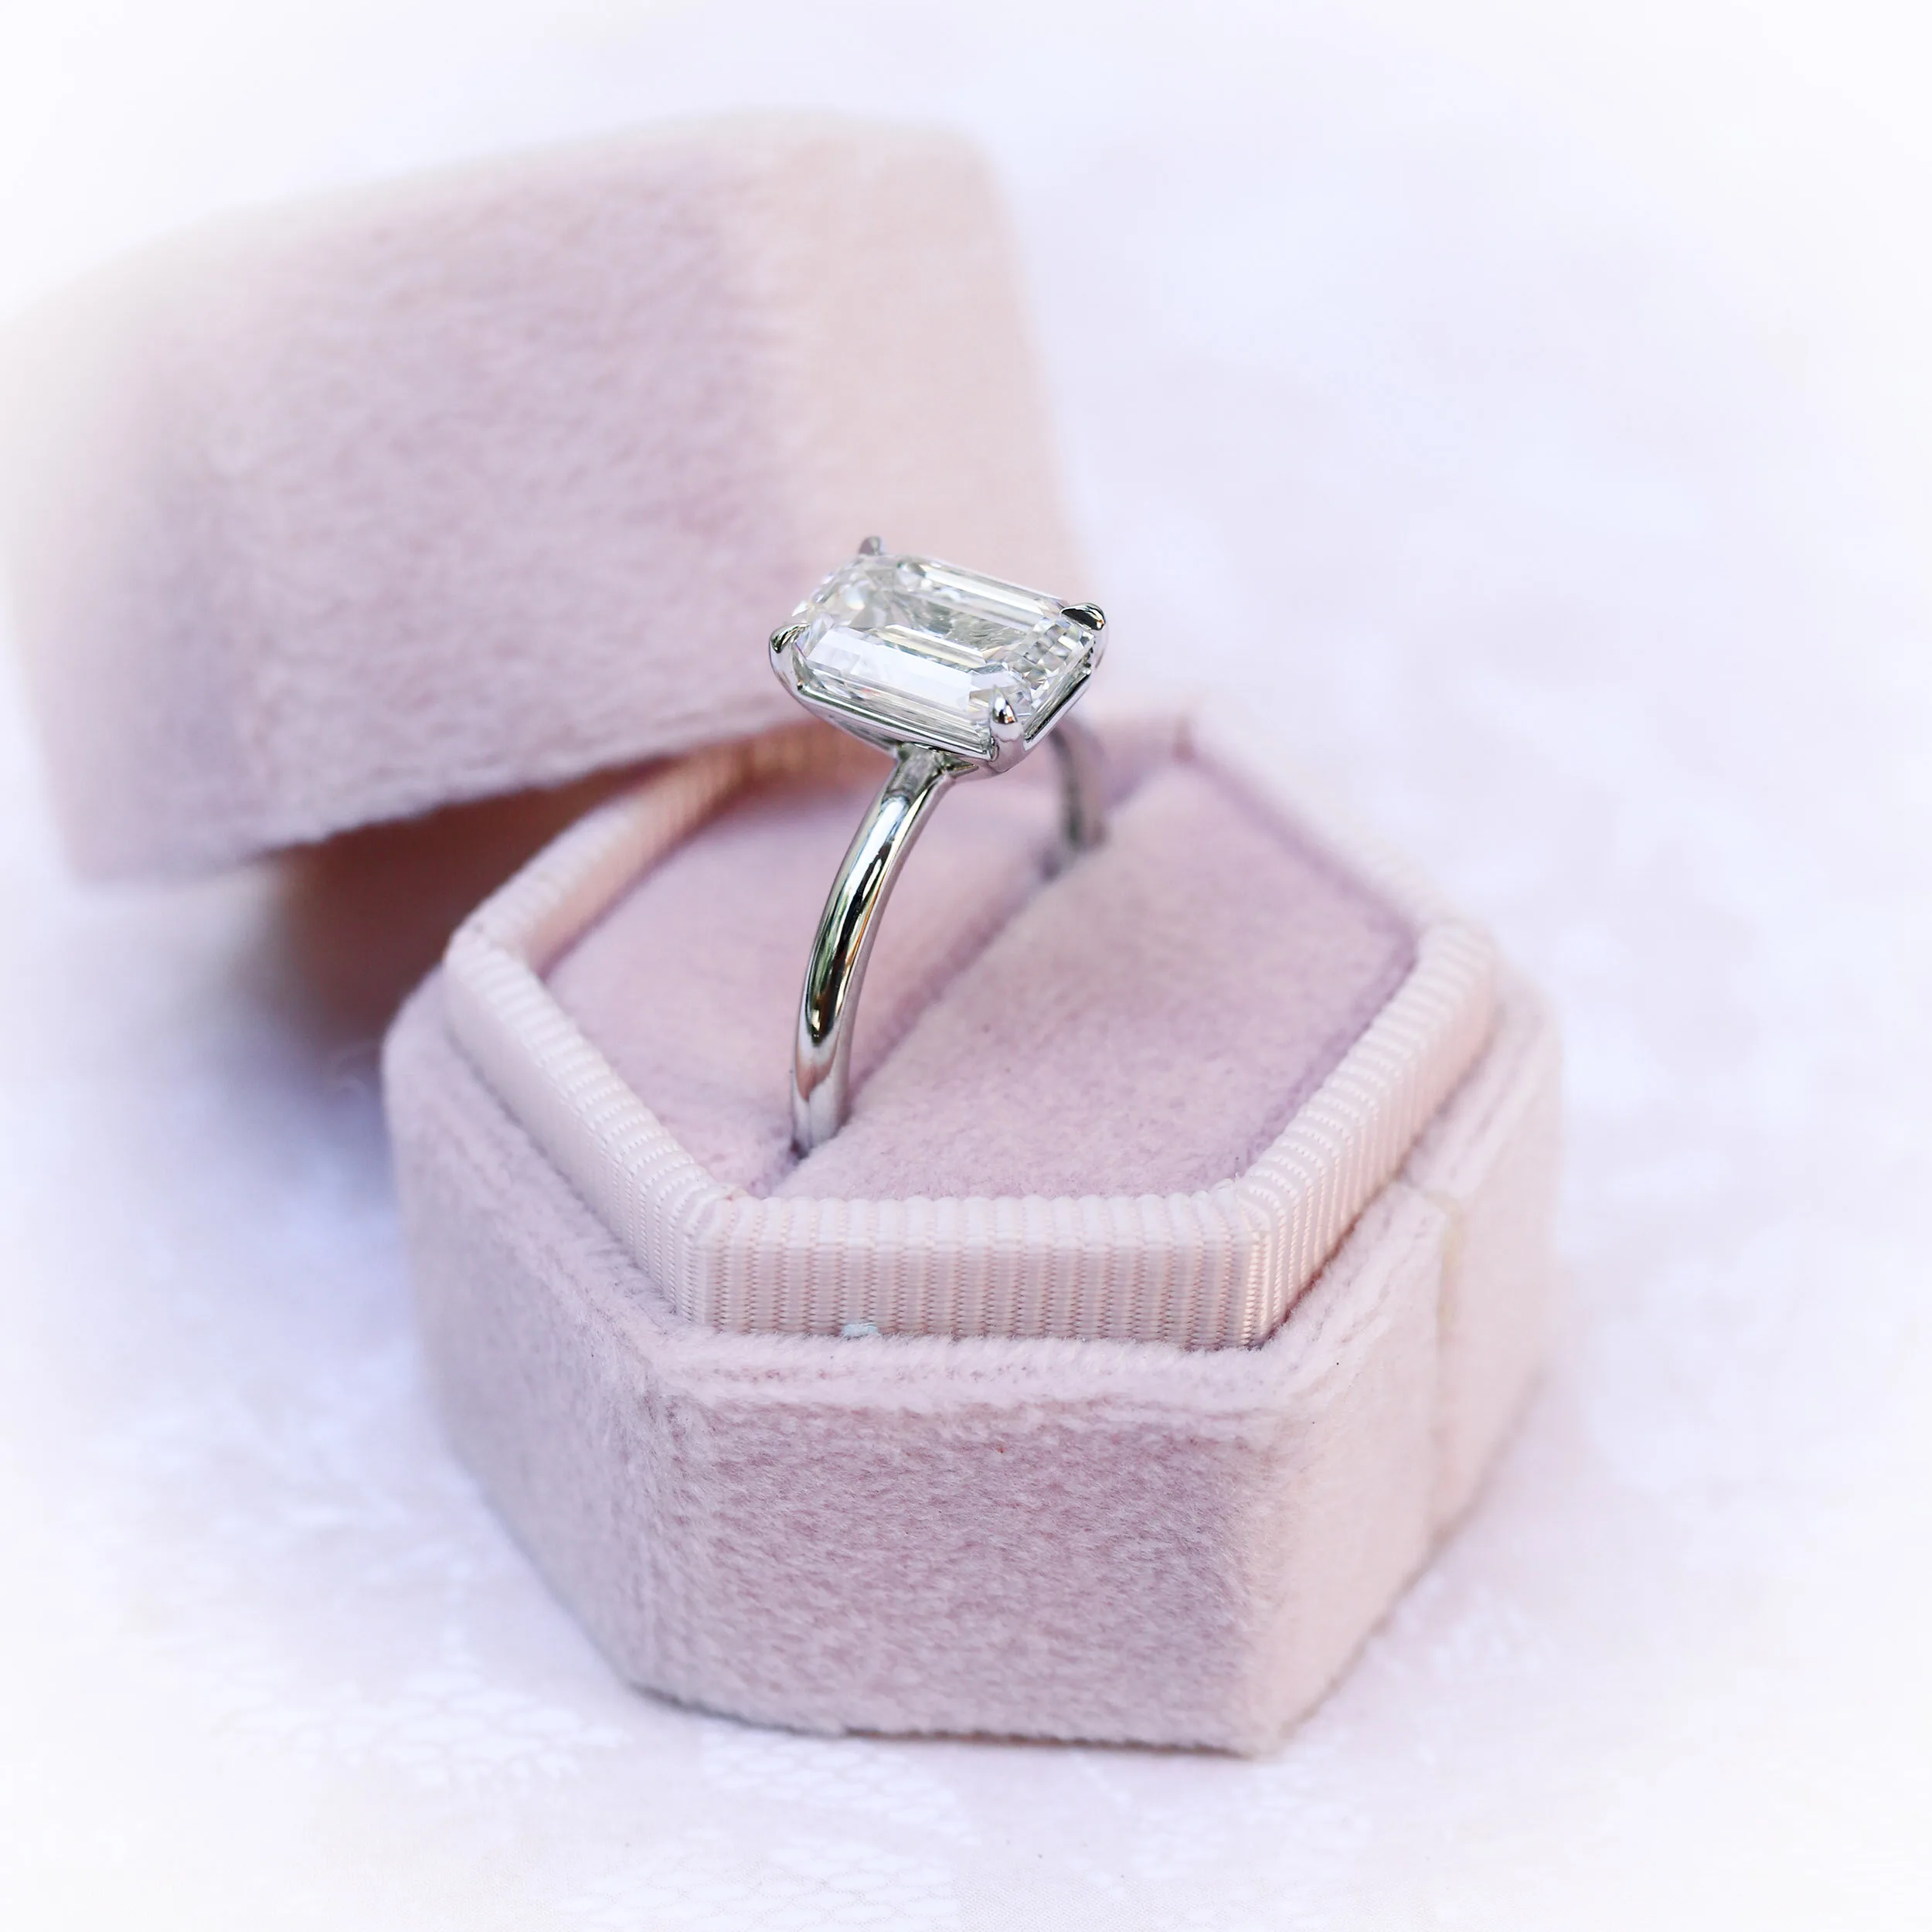 Platinum 2.75 Carat Emerald Cut Solitaire Engagement Ring Featuring Lab Diamonds Ada Diamonds Design Number AD-235 Profile in Box